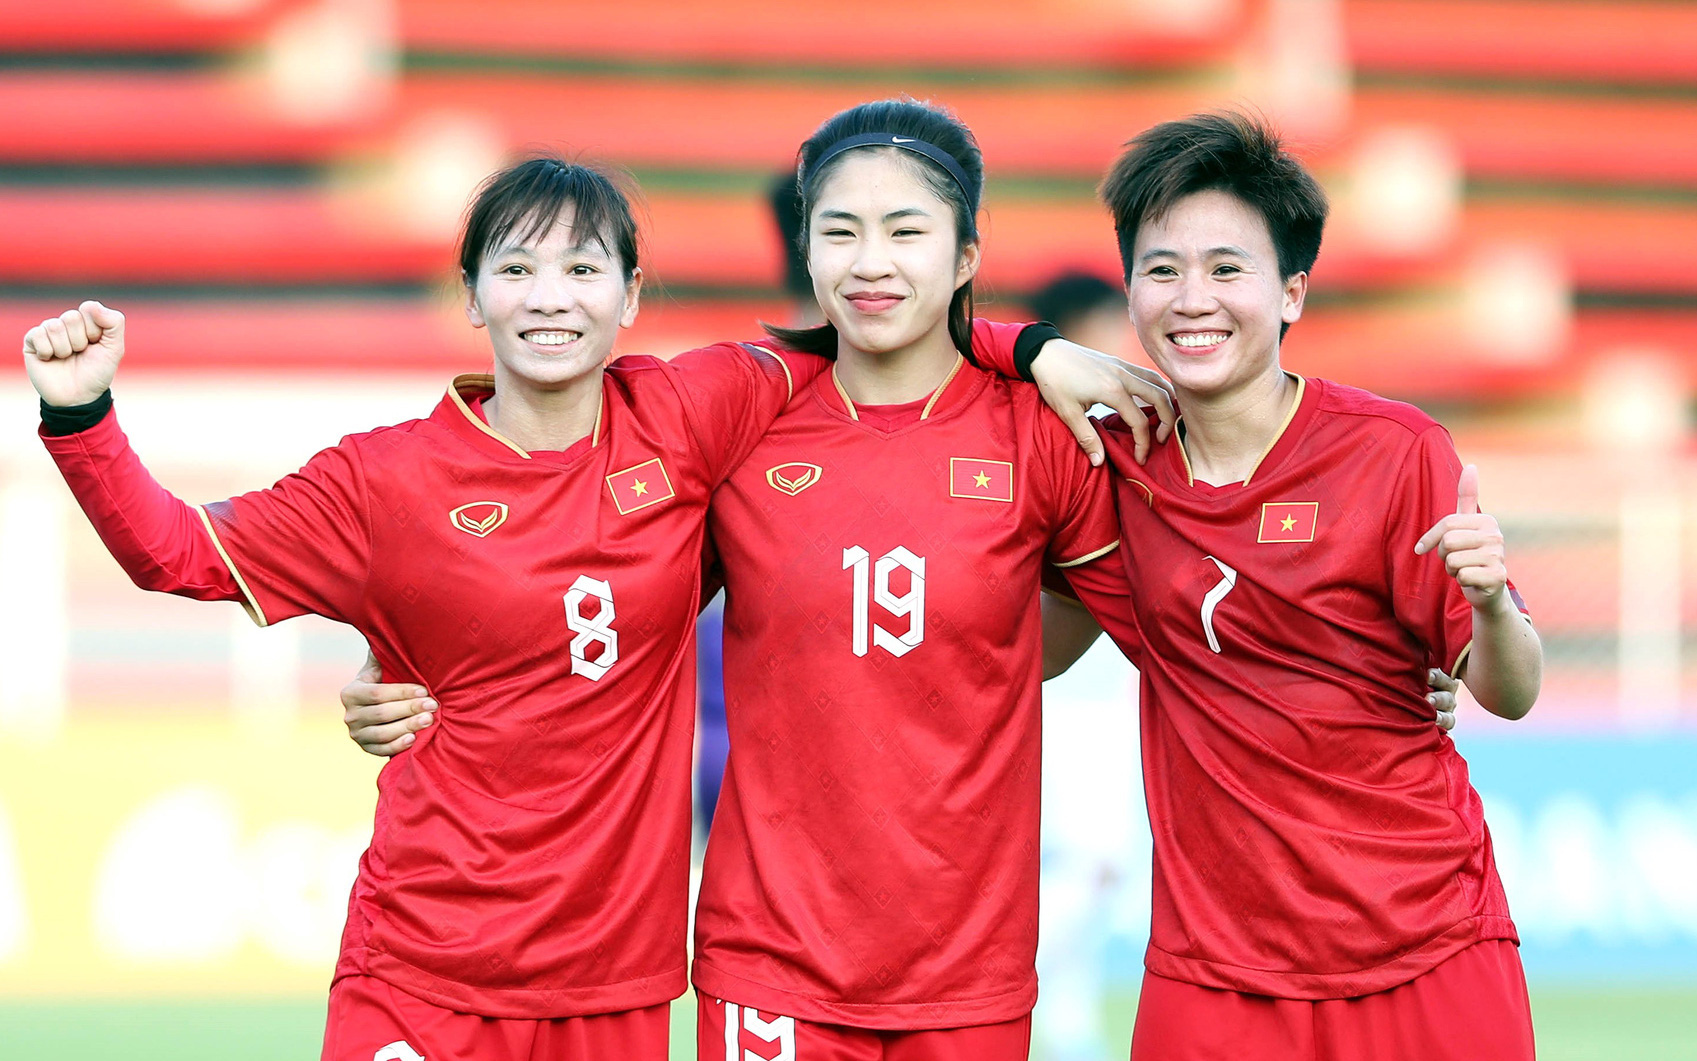 Xem trận giao hữu đội tuyển nữ Việt Nam - New Zealand ở đâu?